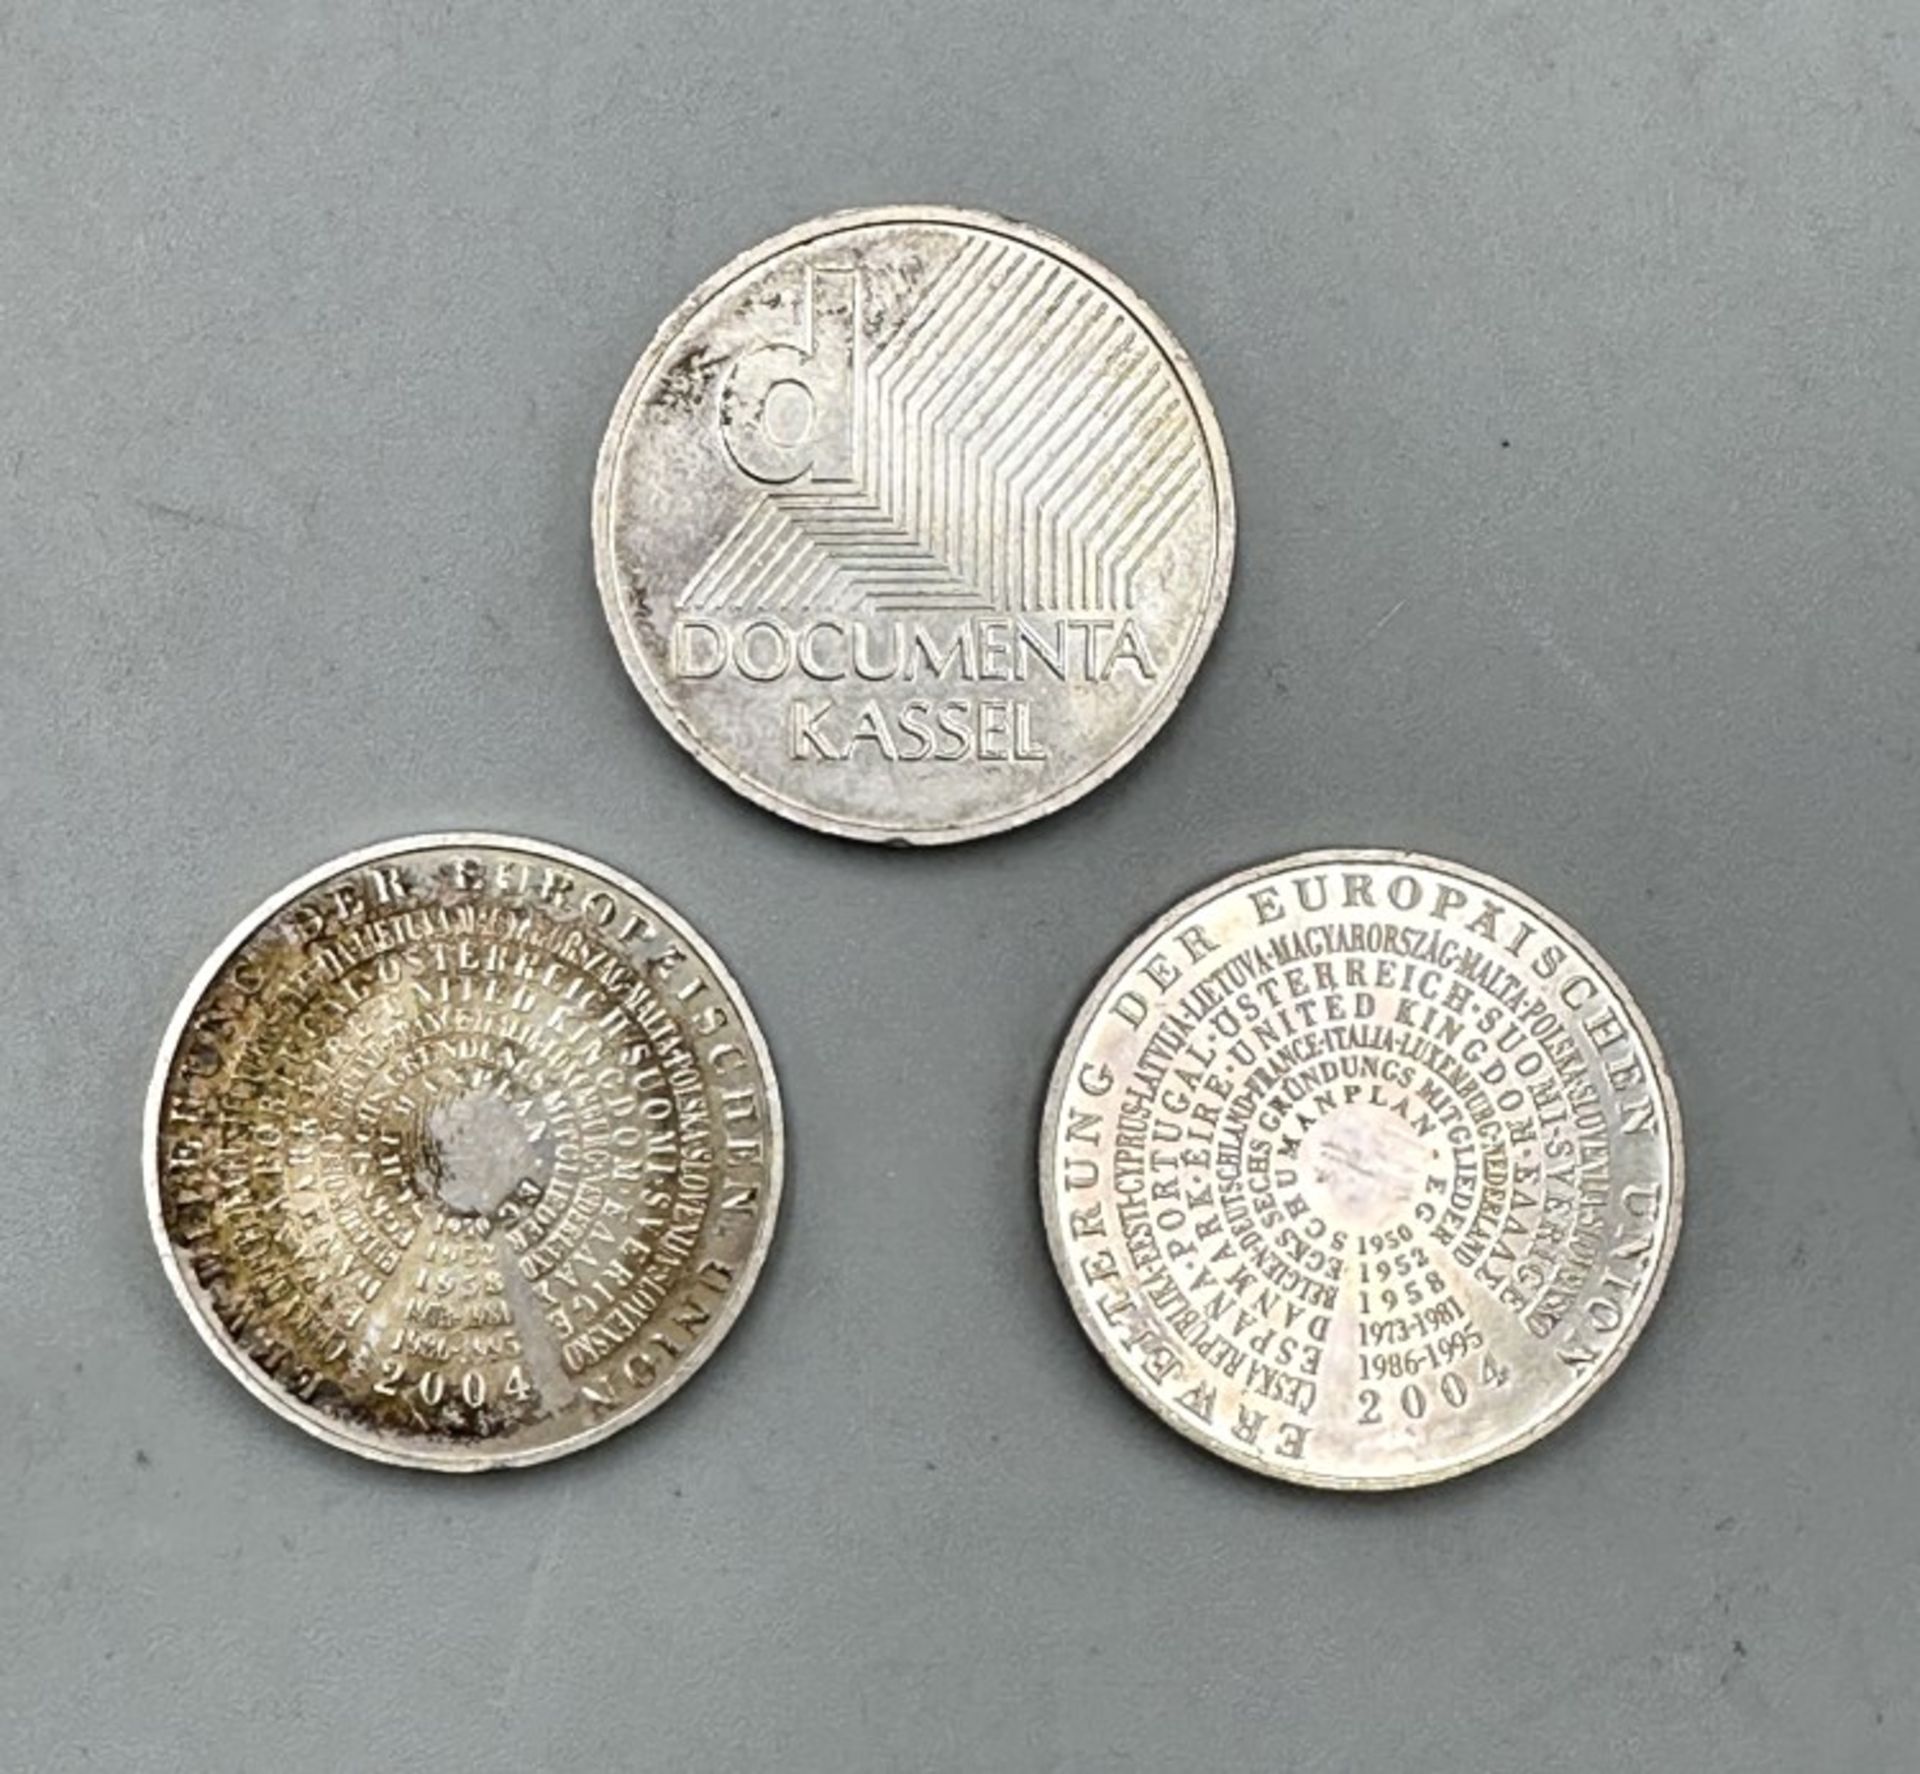 Euromünzen - Image 2 of 2